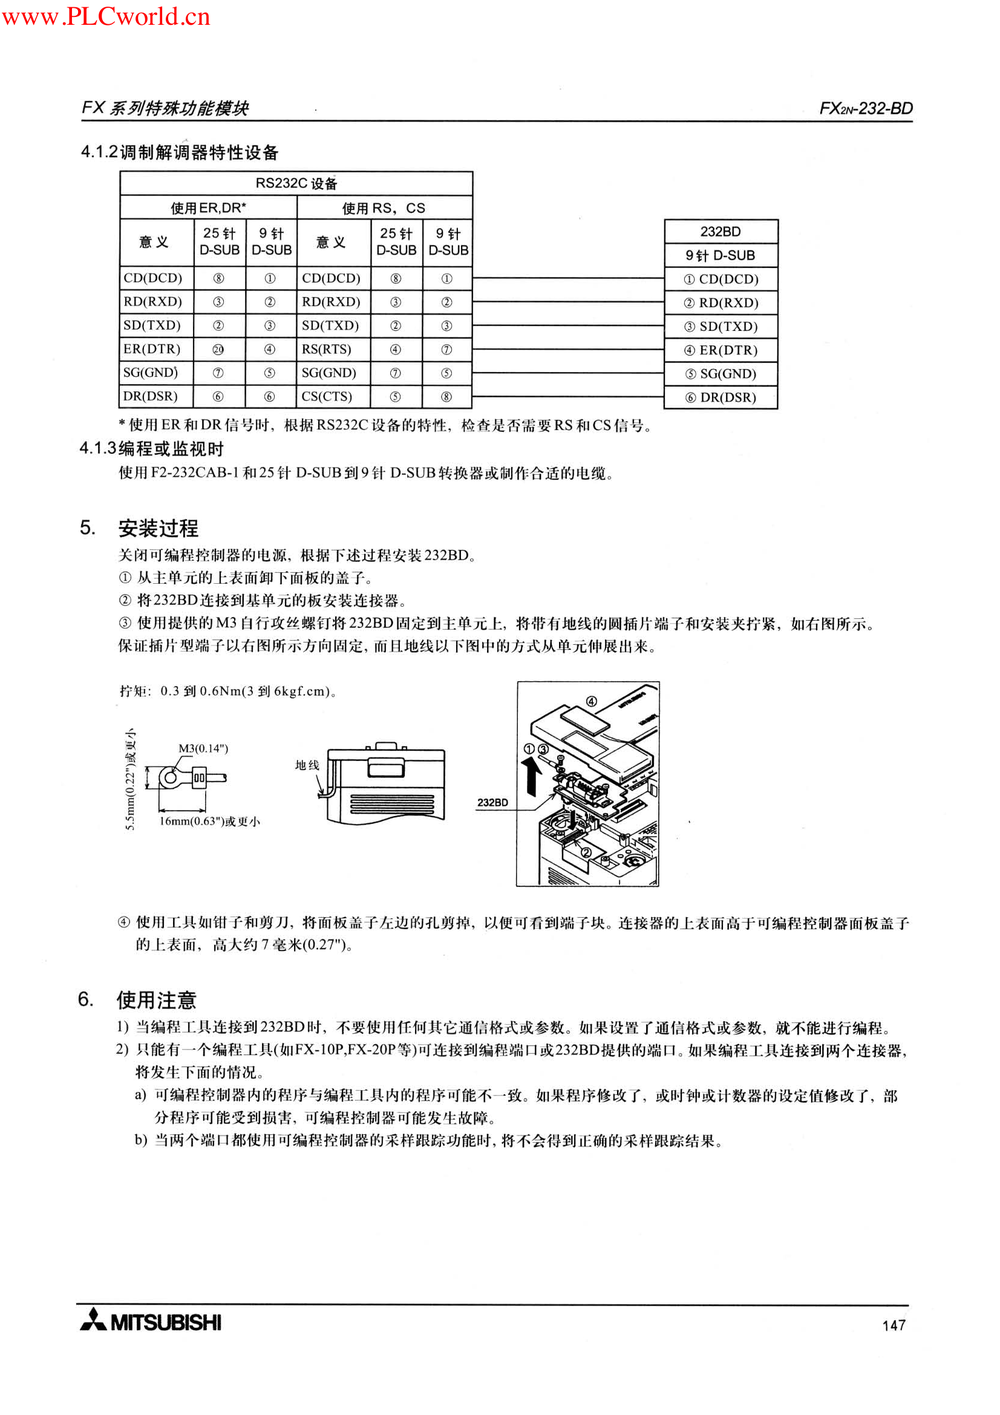 FX2N-232-BD用户指南.pdf-第4页.png